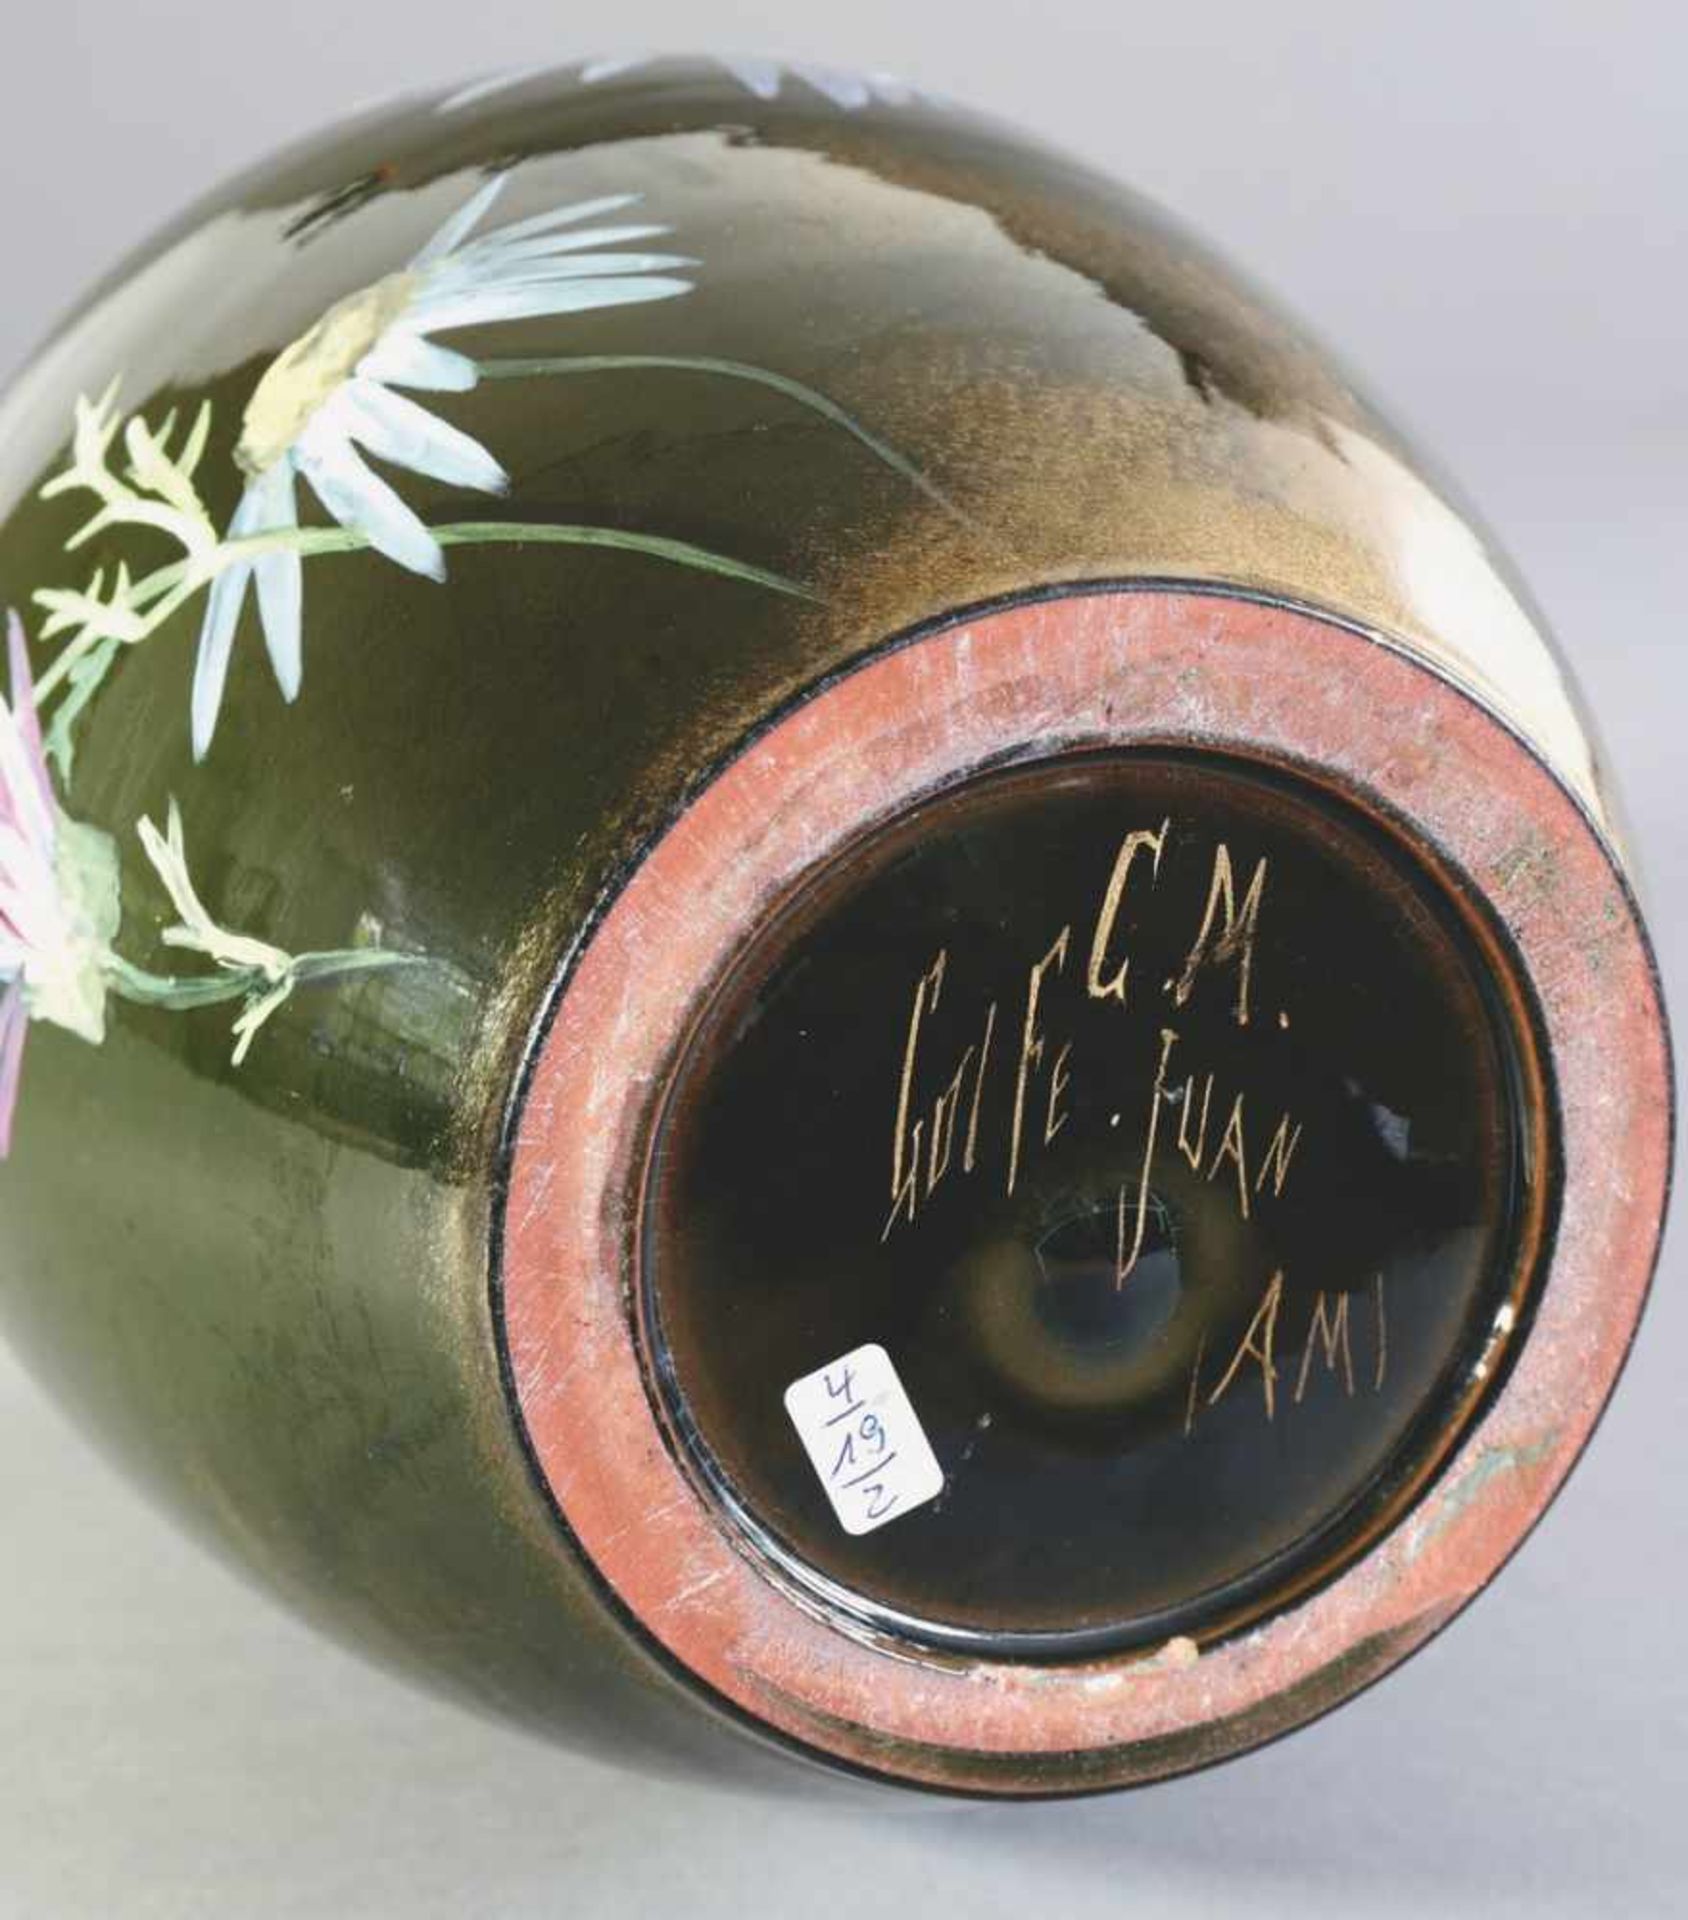 Clement Massier, Vallaurisabout 1900Vase. Um 1900. Keramik. Polychrome, emailartig aufliegende - Bild 2 aus 2